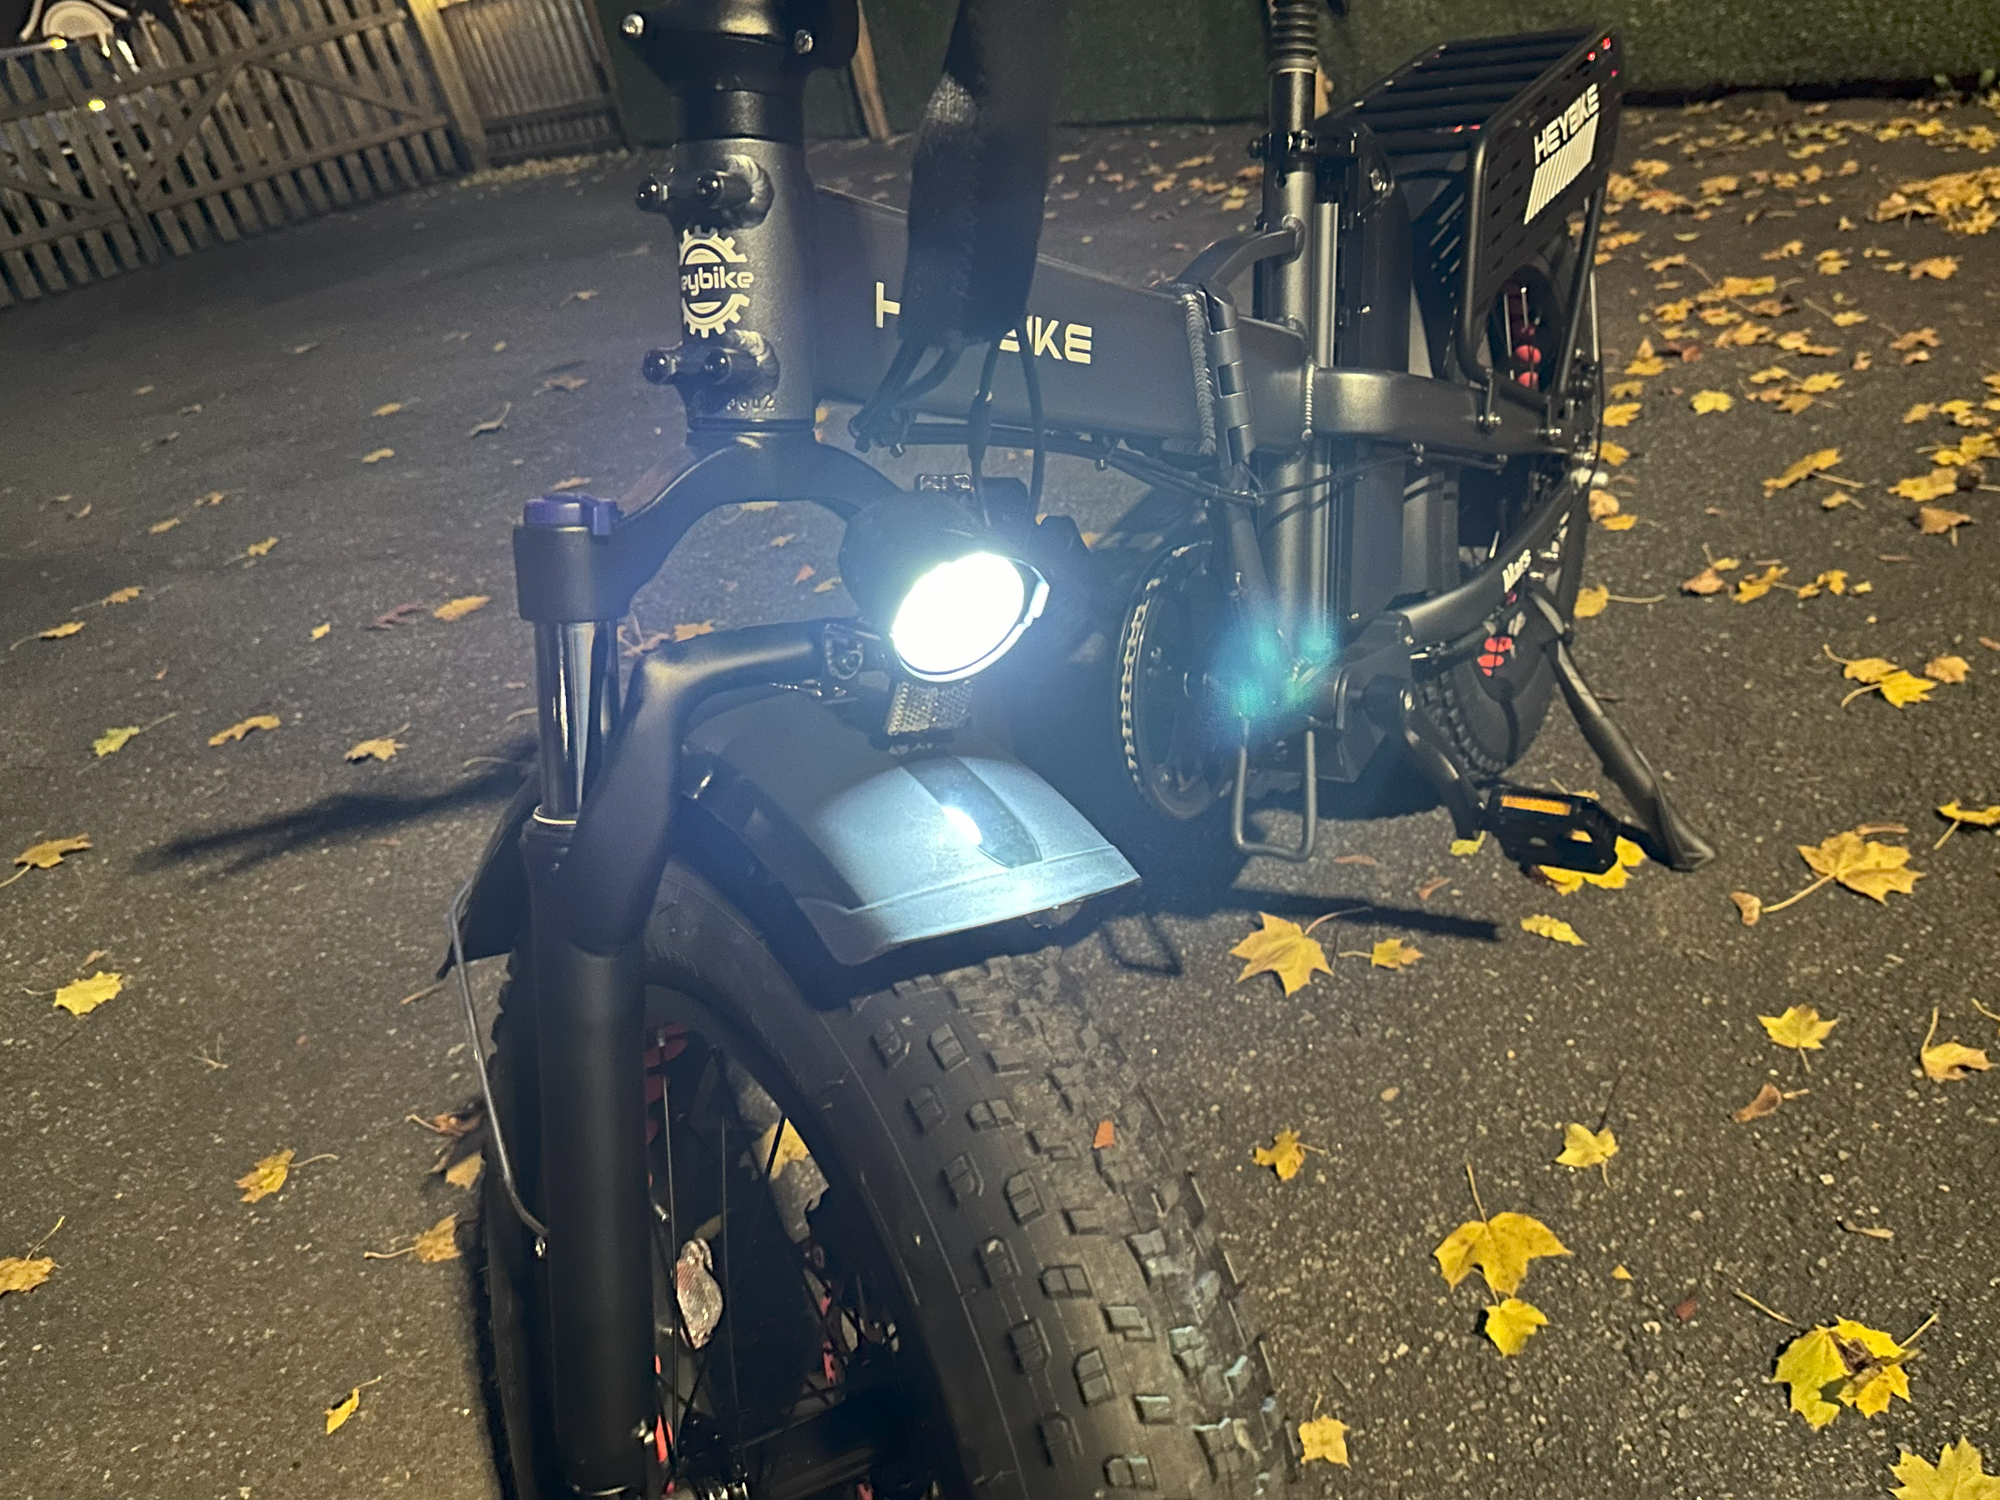 Heybike Mars 2.0 headlight